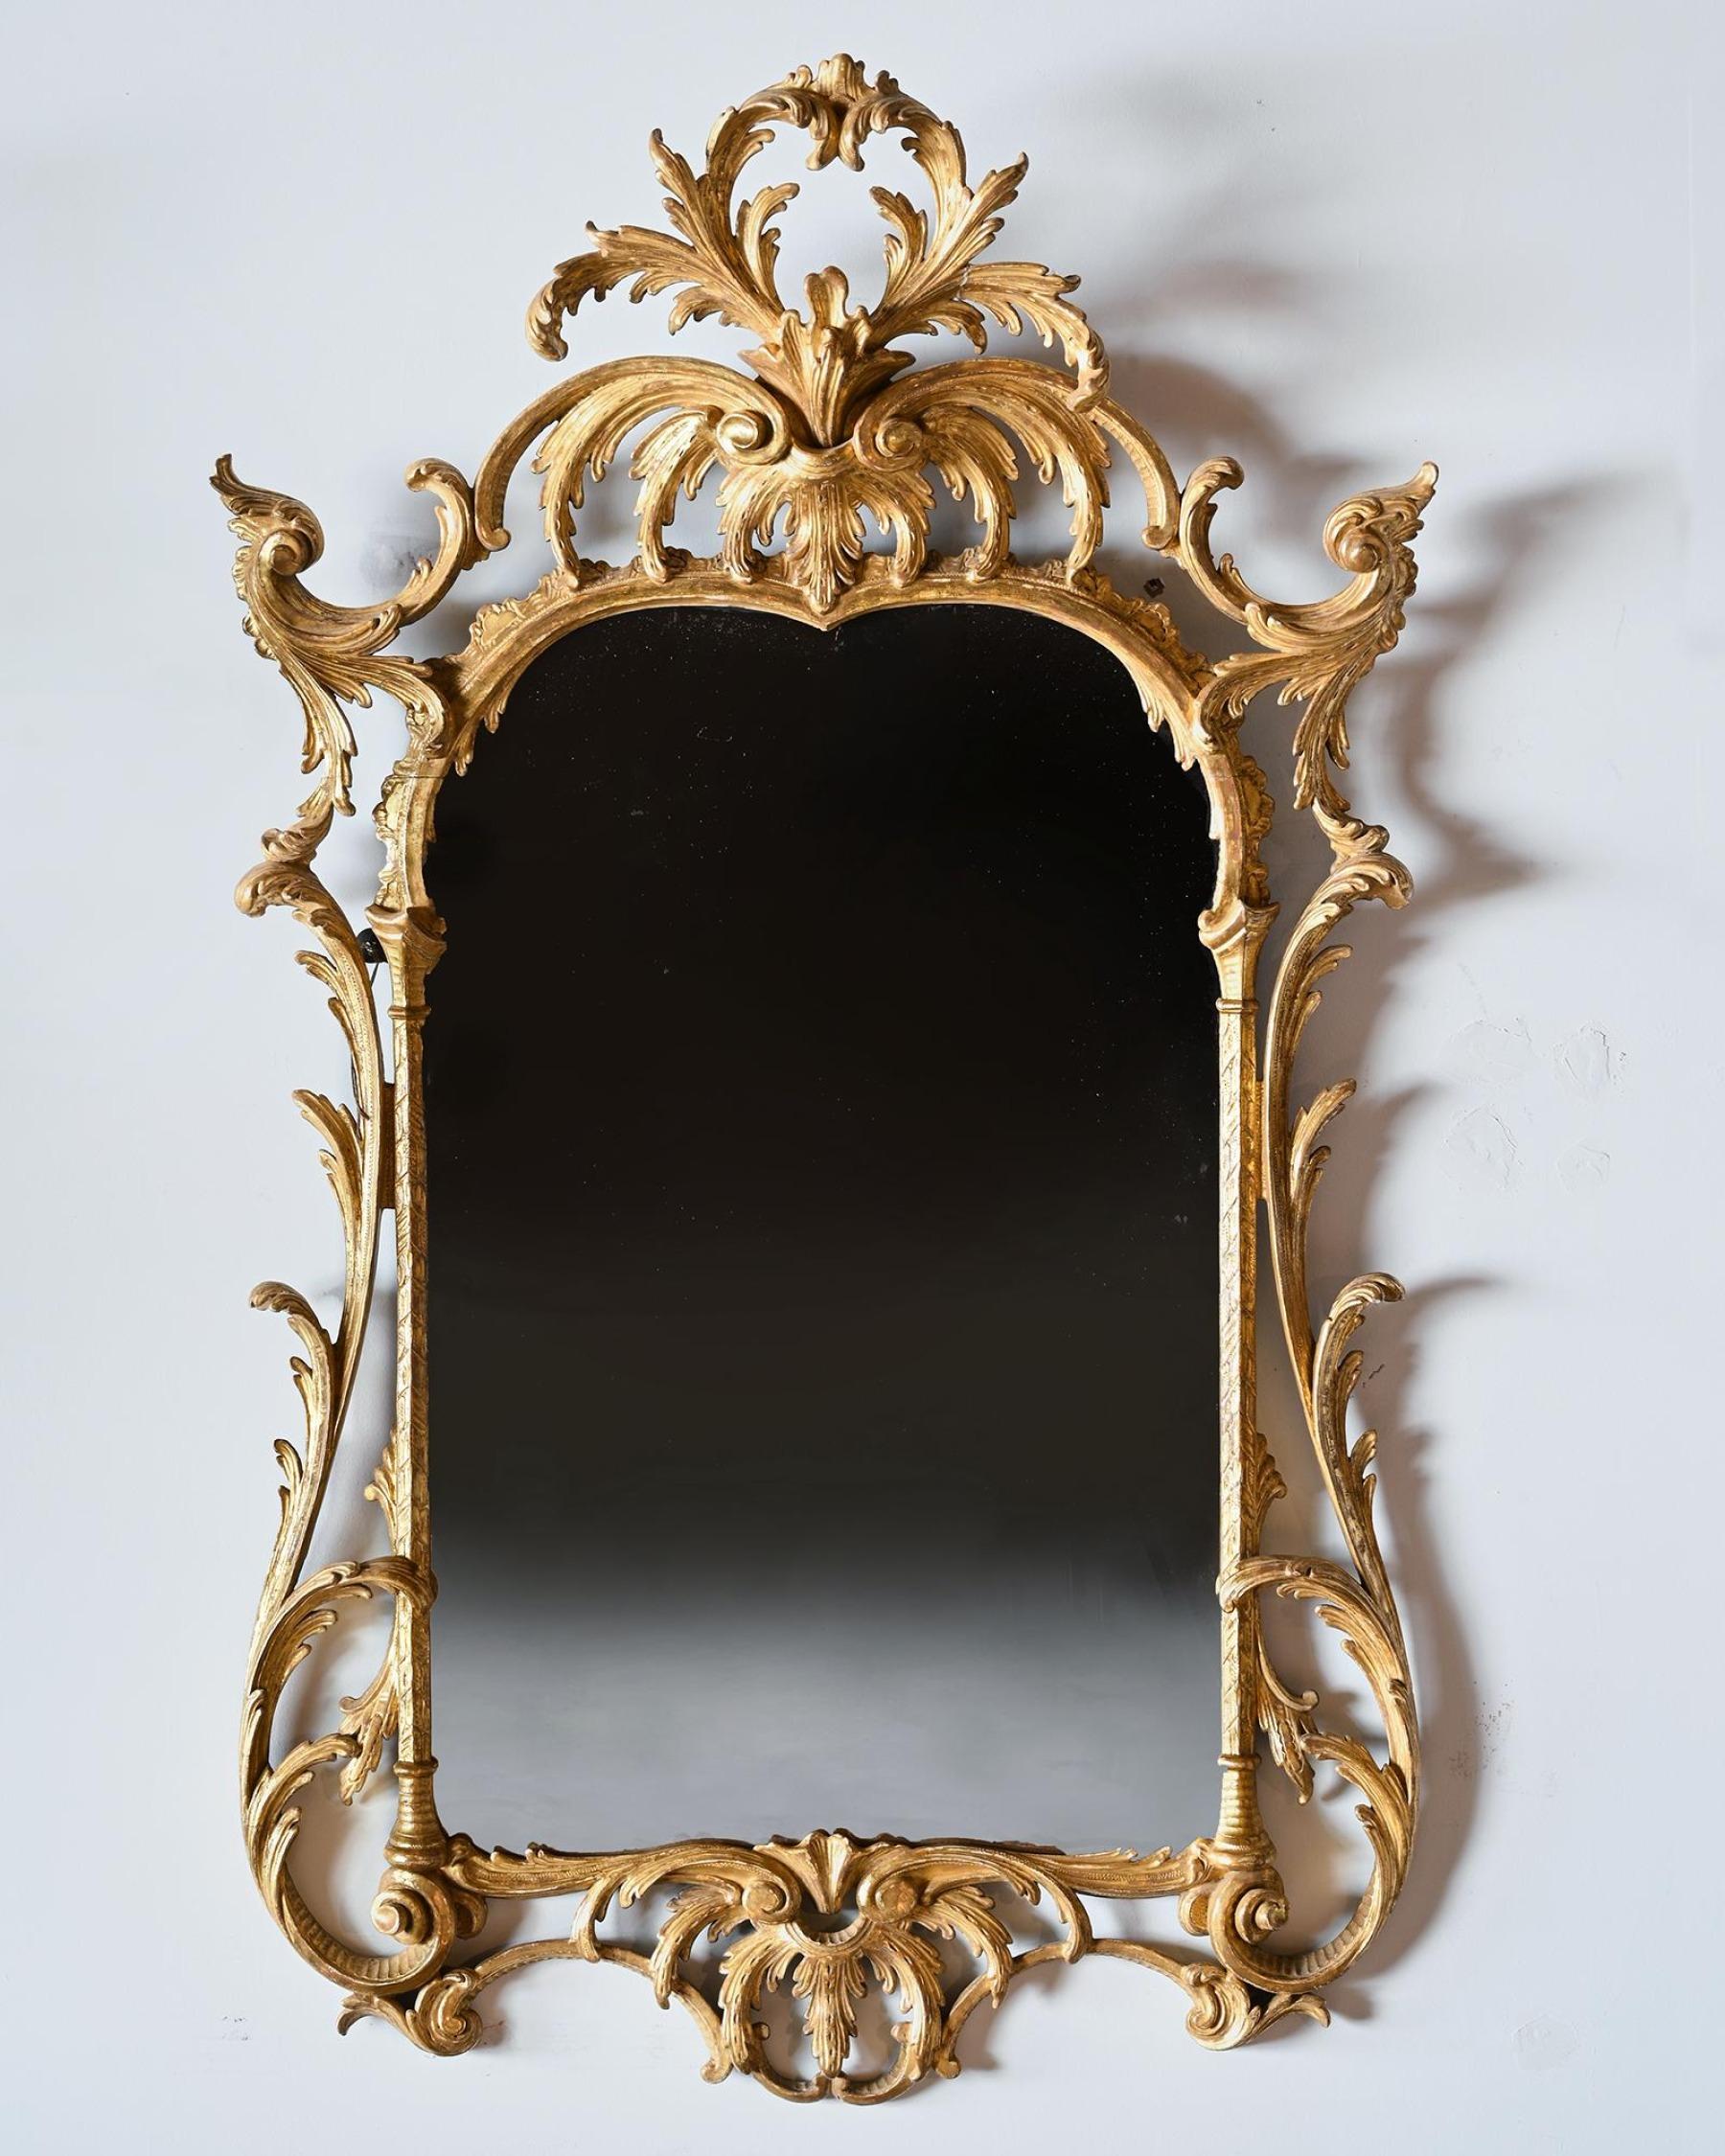 Une paire extrêmement fine de miroirs en bois doré de la fin du 19e siècle / début du 20e siècle dans le style rococo tardif de John Linnell.

Anglais vers 1900

Les miroirs sont de belles proportions et conservent leur dorure et leurs plaques